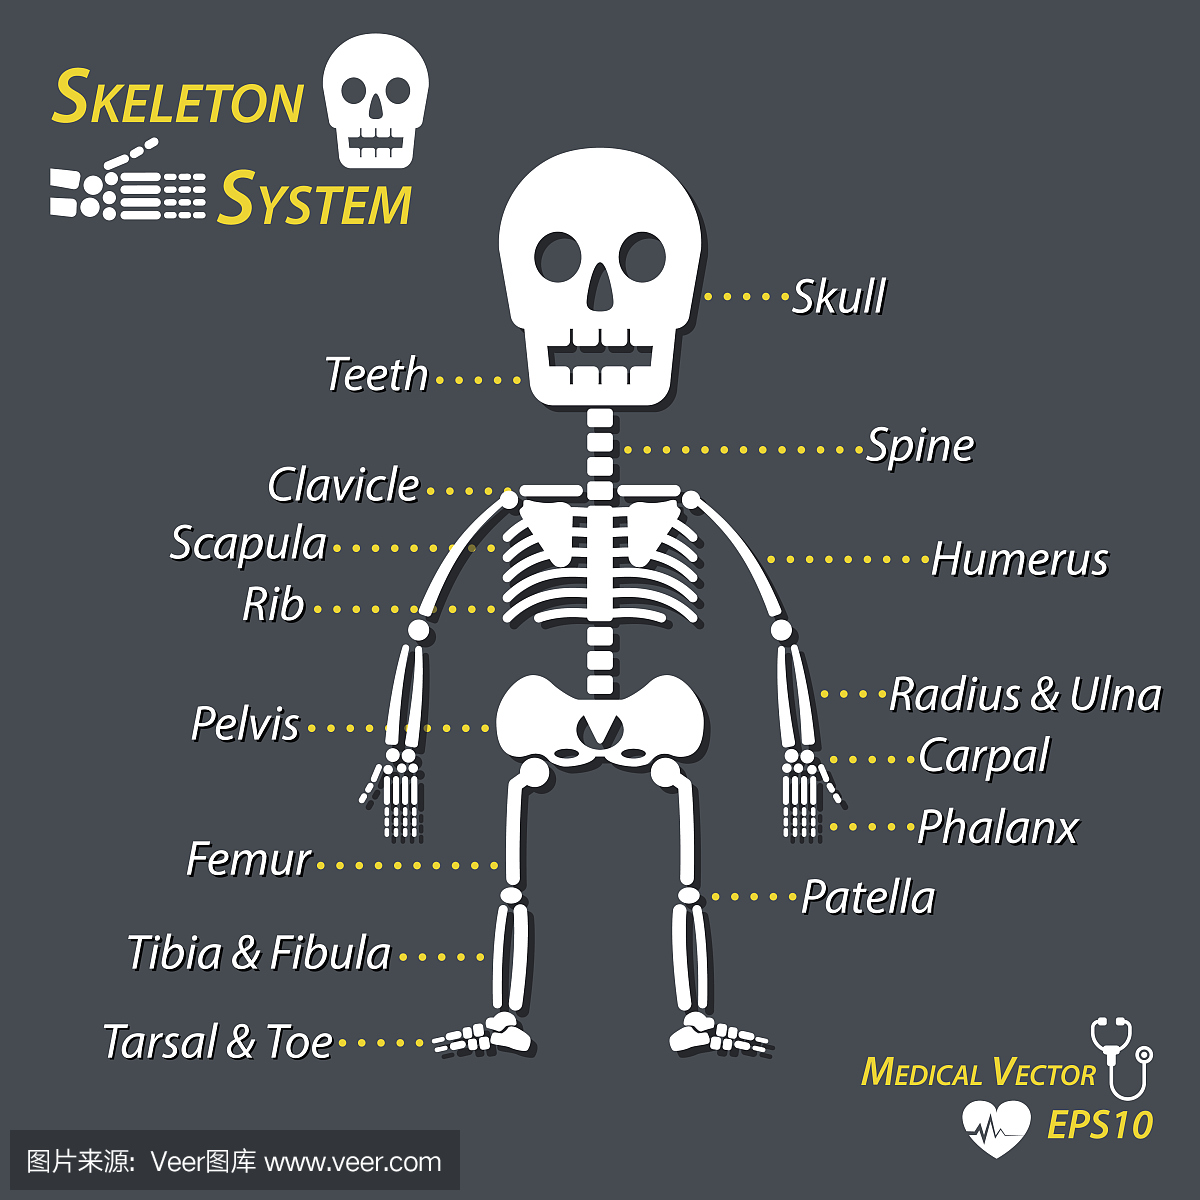 人骨骼和骨骼的所有名称(头骨,颈椎,肱骨,半径